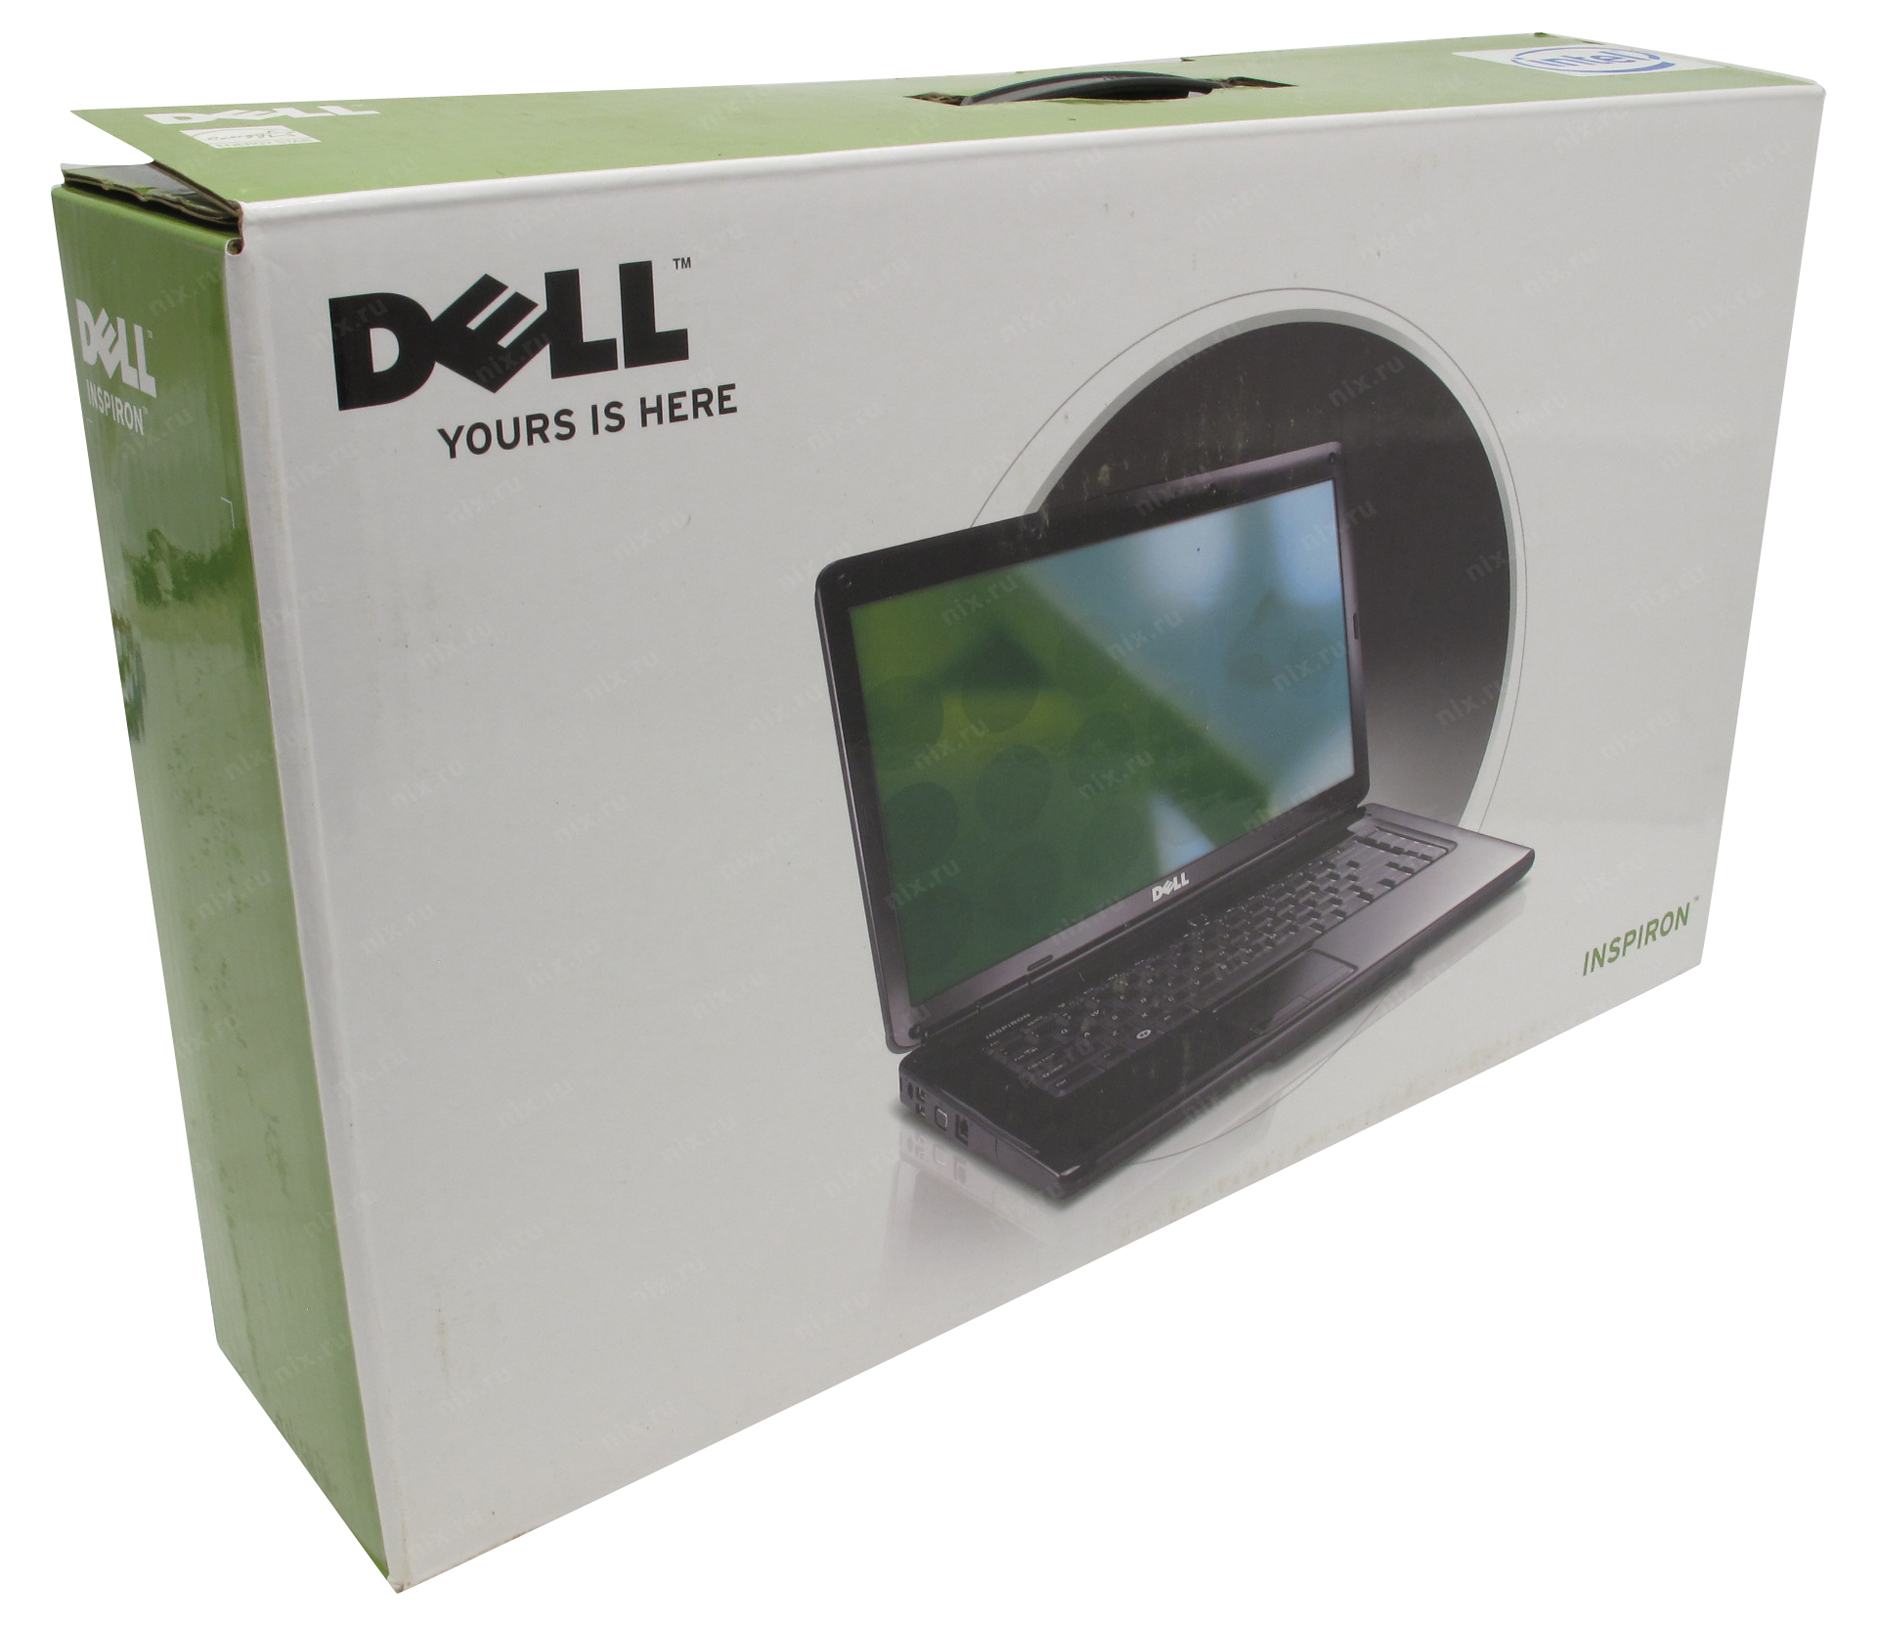 Купить Ноутбук Dell Inspiron 1545